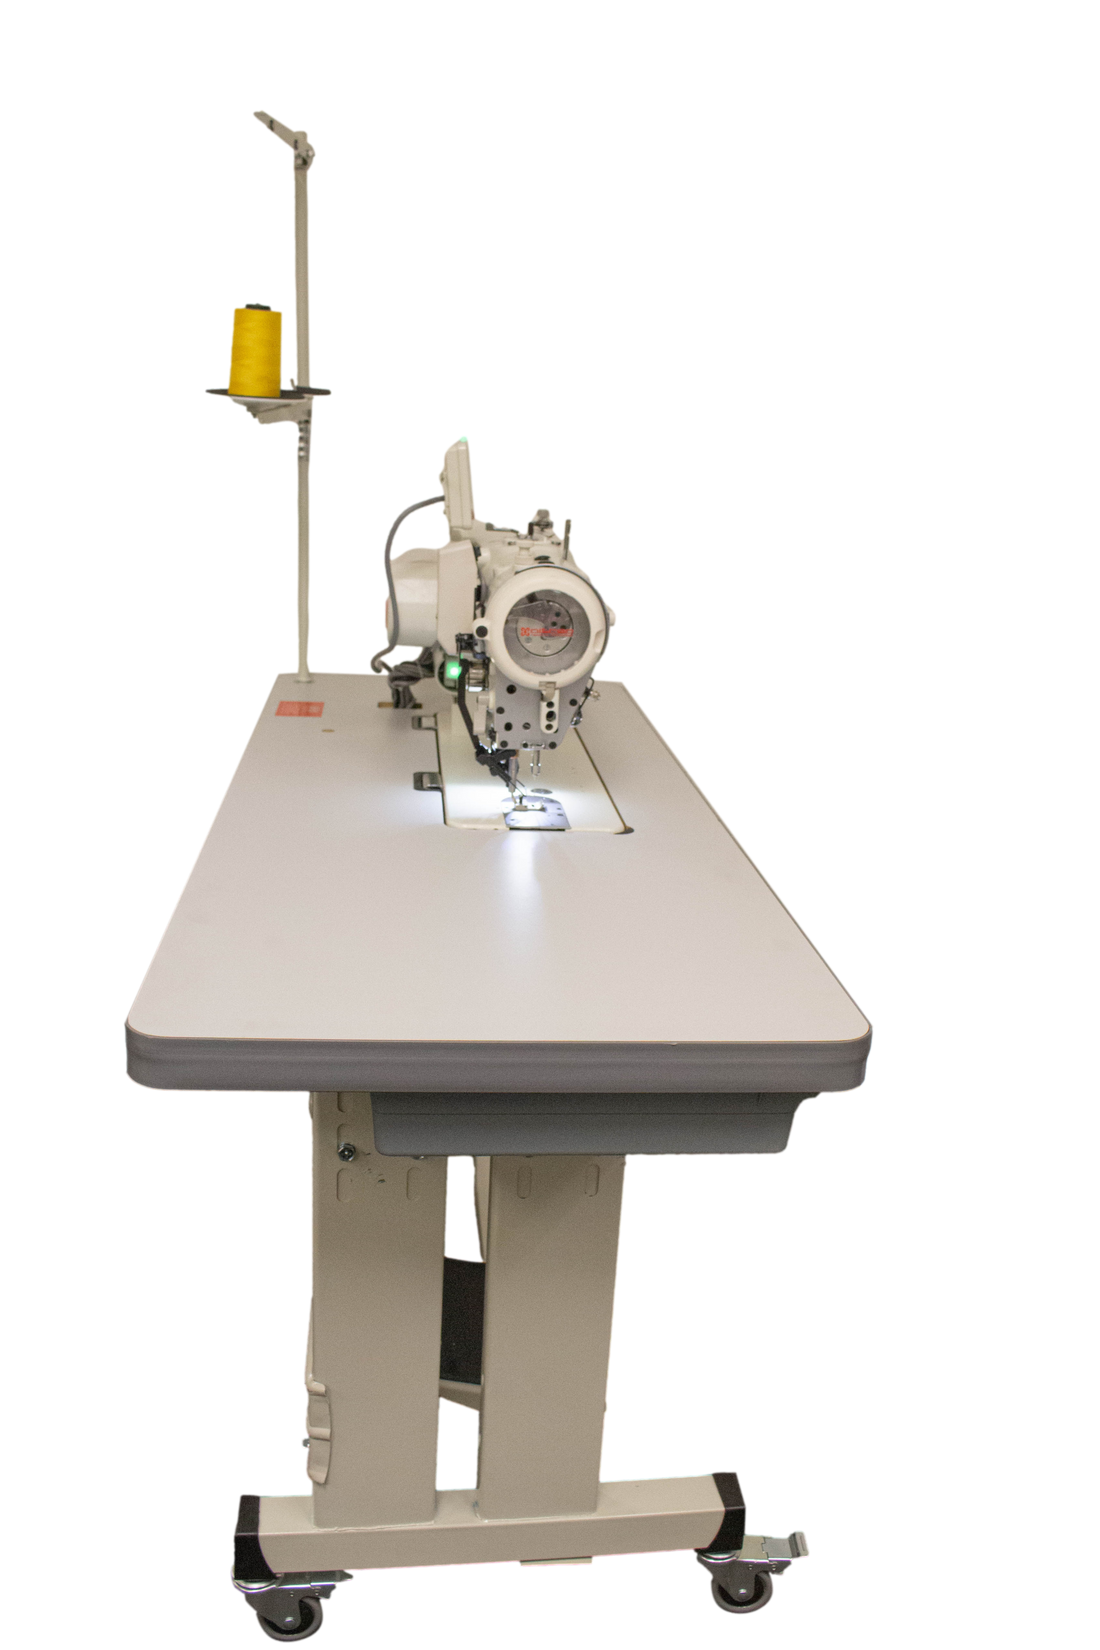 NT-2290A-SR-7/P Máquina de coser en zig-zag de accionamiento directo de aguja única de alta velocidad controlada por computadora de múltiples diseños